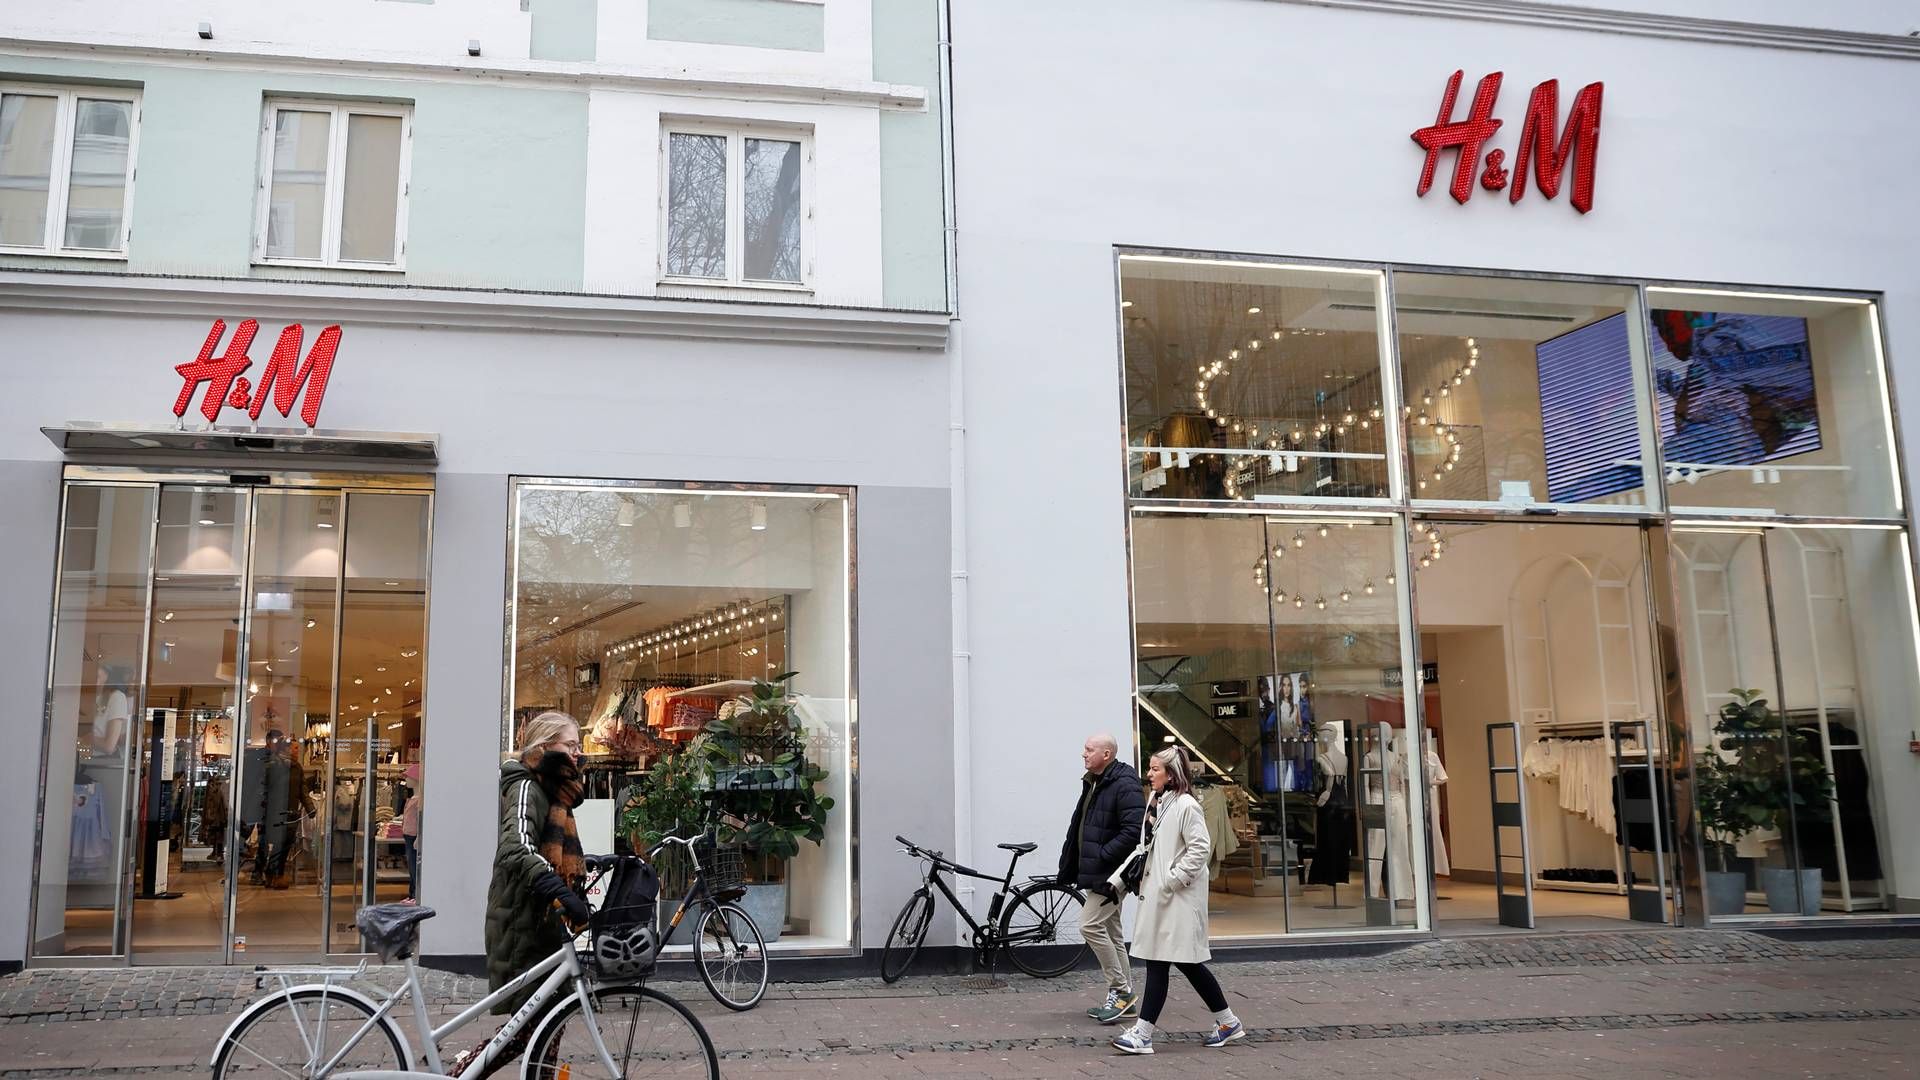 Omkring 10 af H&M's butikker ligger på Strøget i København. Koncernen driver kæderne H&M, Cos, &Other Stories, Arket, Monki, Weekday og H&M Home. | Foto: Jens Dresling